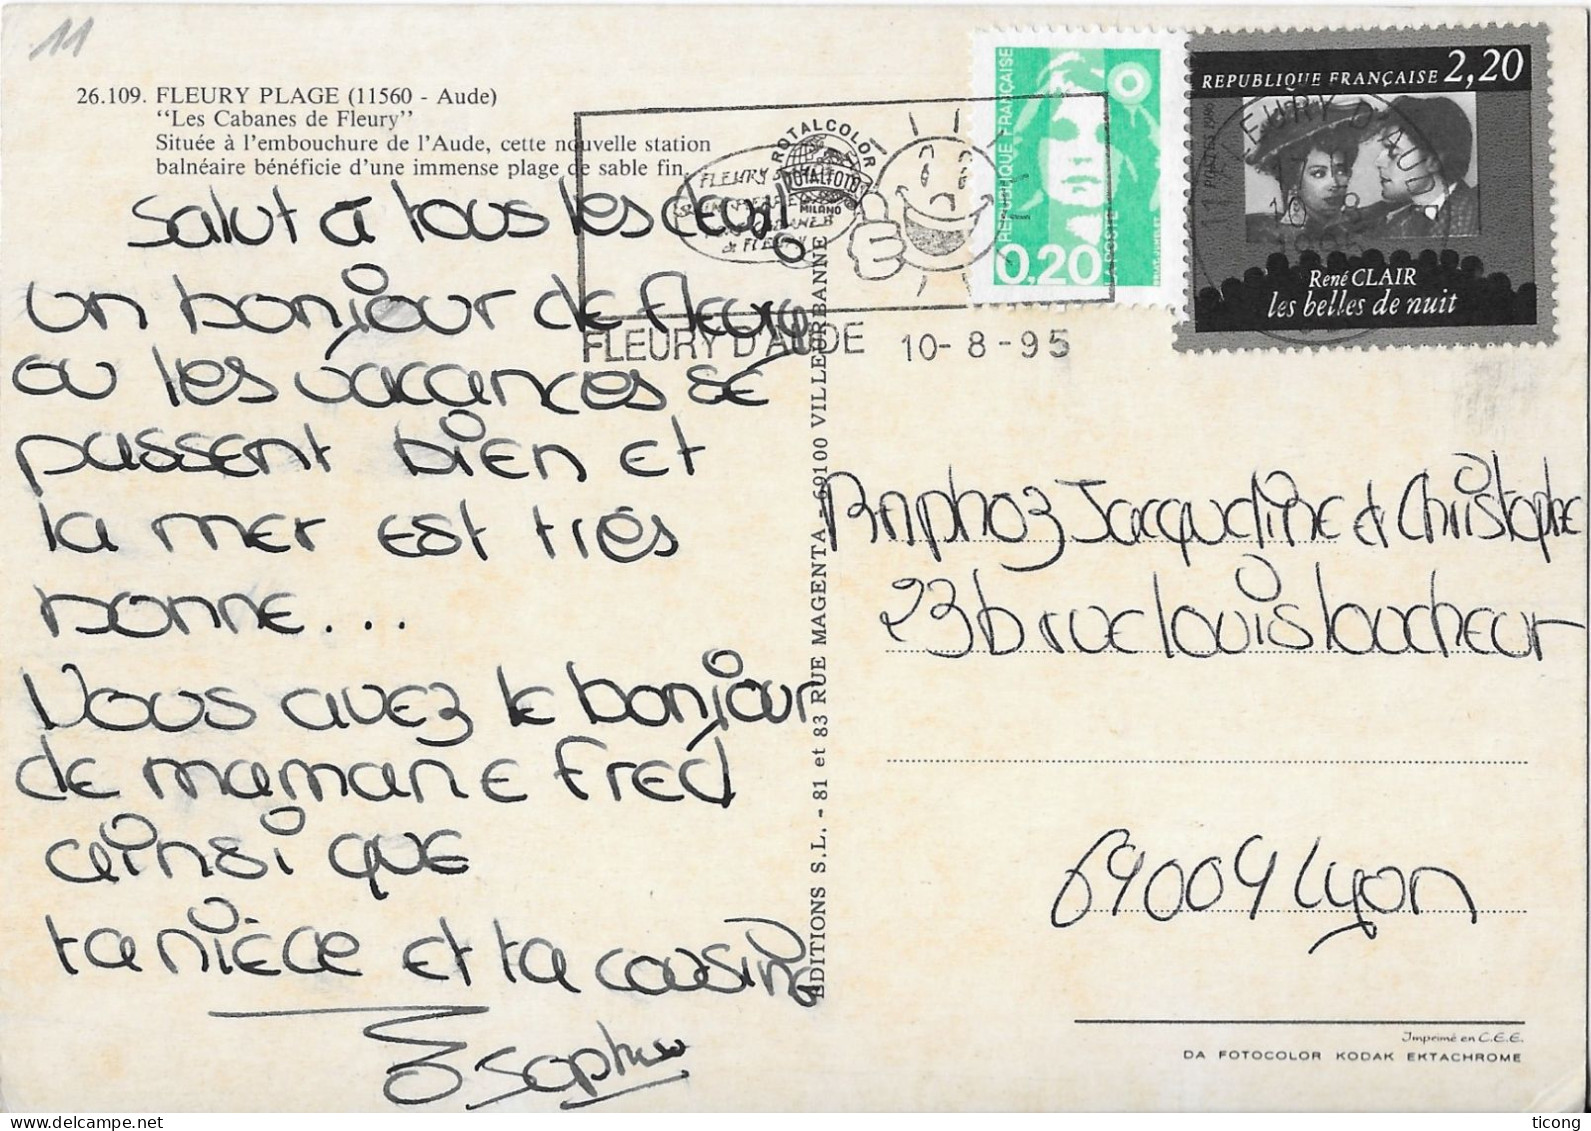 FLEURY PLAGE AUDE - PORT, LES CABANES DE FLEURY, FLAMME DE LA VILLE 1995 ( TIMBRE RENE CLAIR LES BELLES DE NUIT, BRIAT ) - Storia Postale